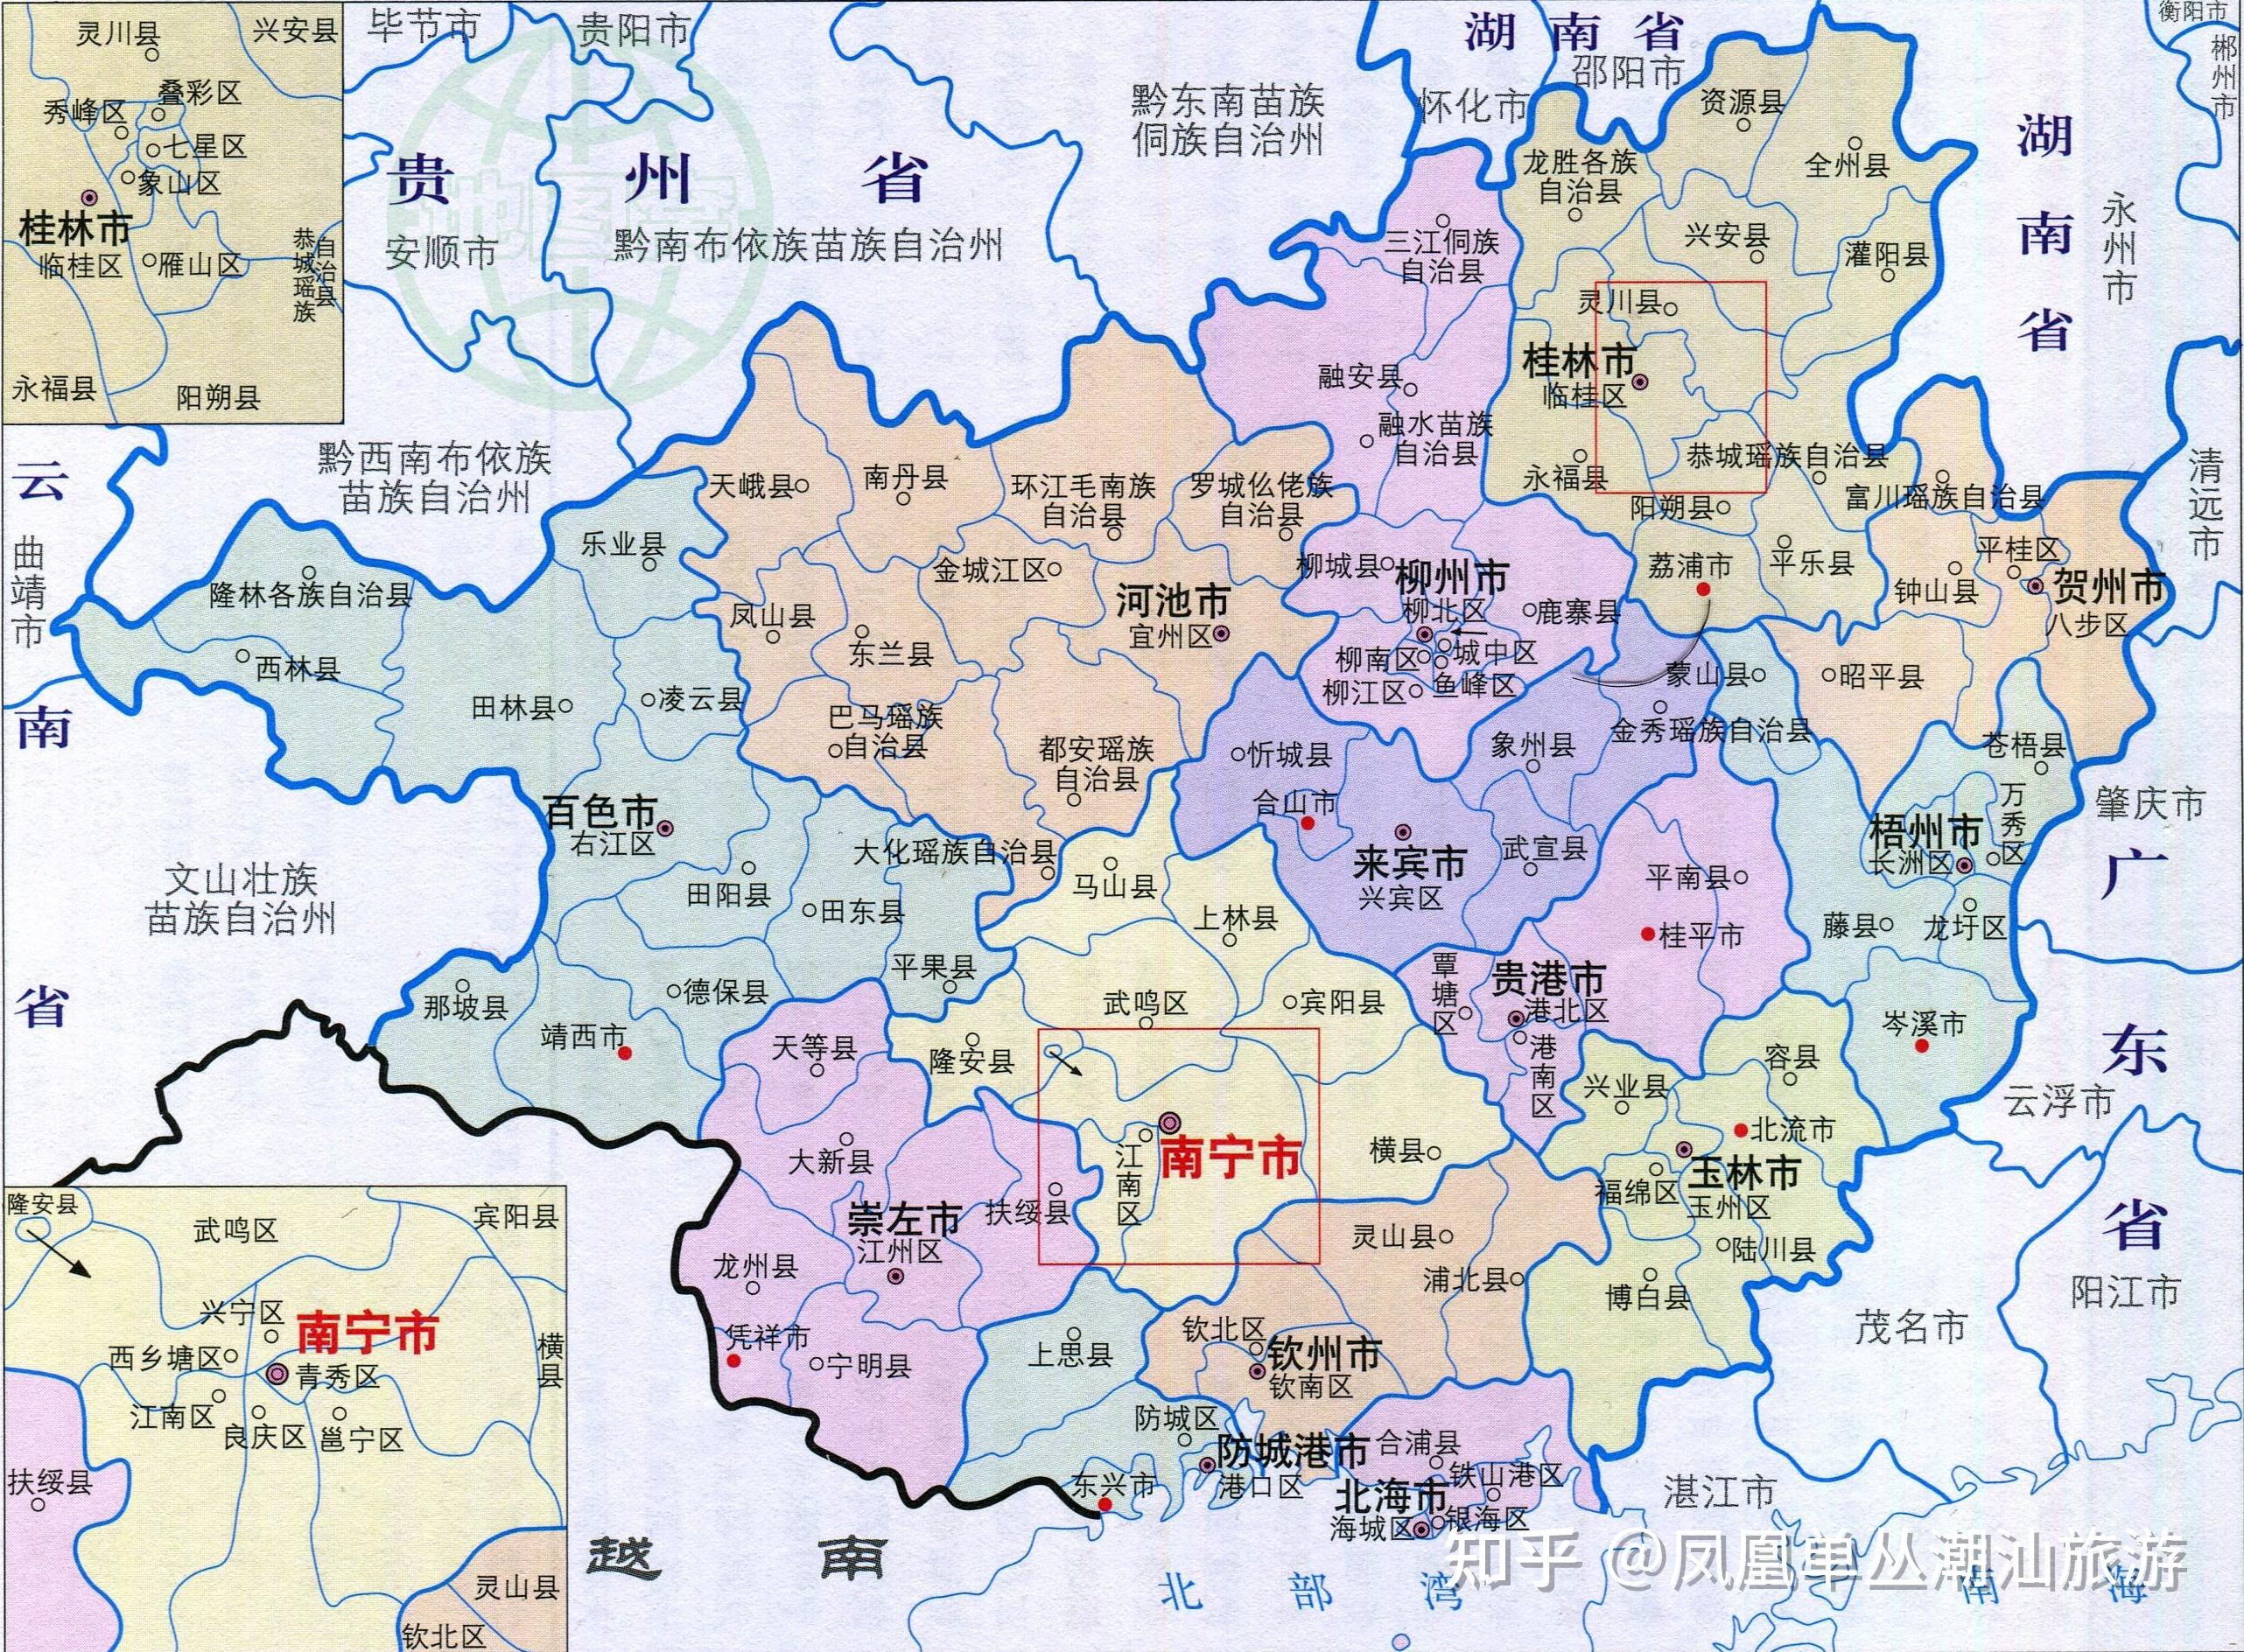 1,地理位置广西省地处中国南部,面积23.76万平方千米,首府为南宁市.